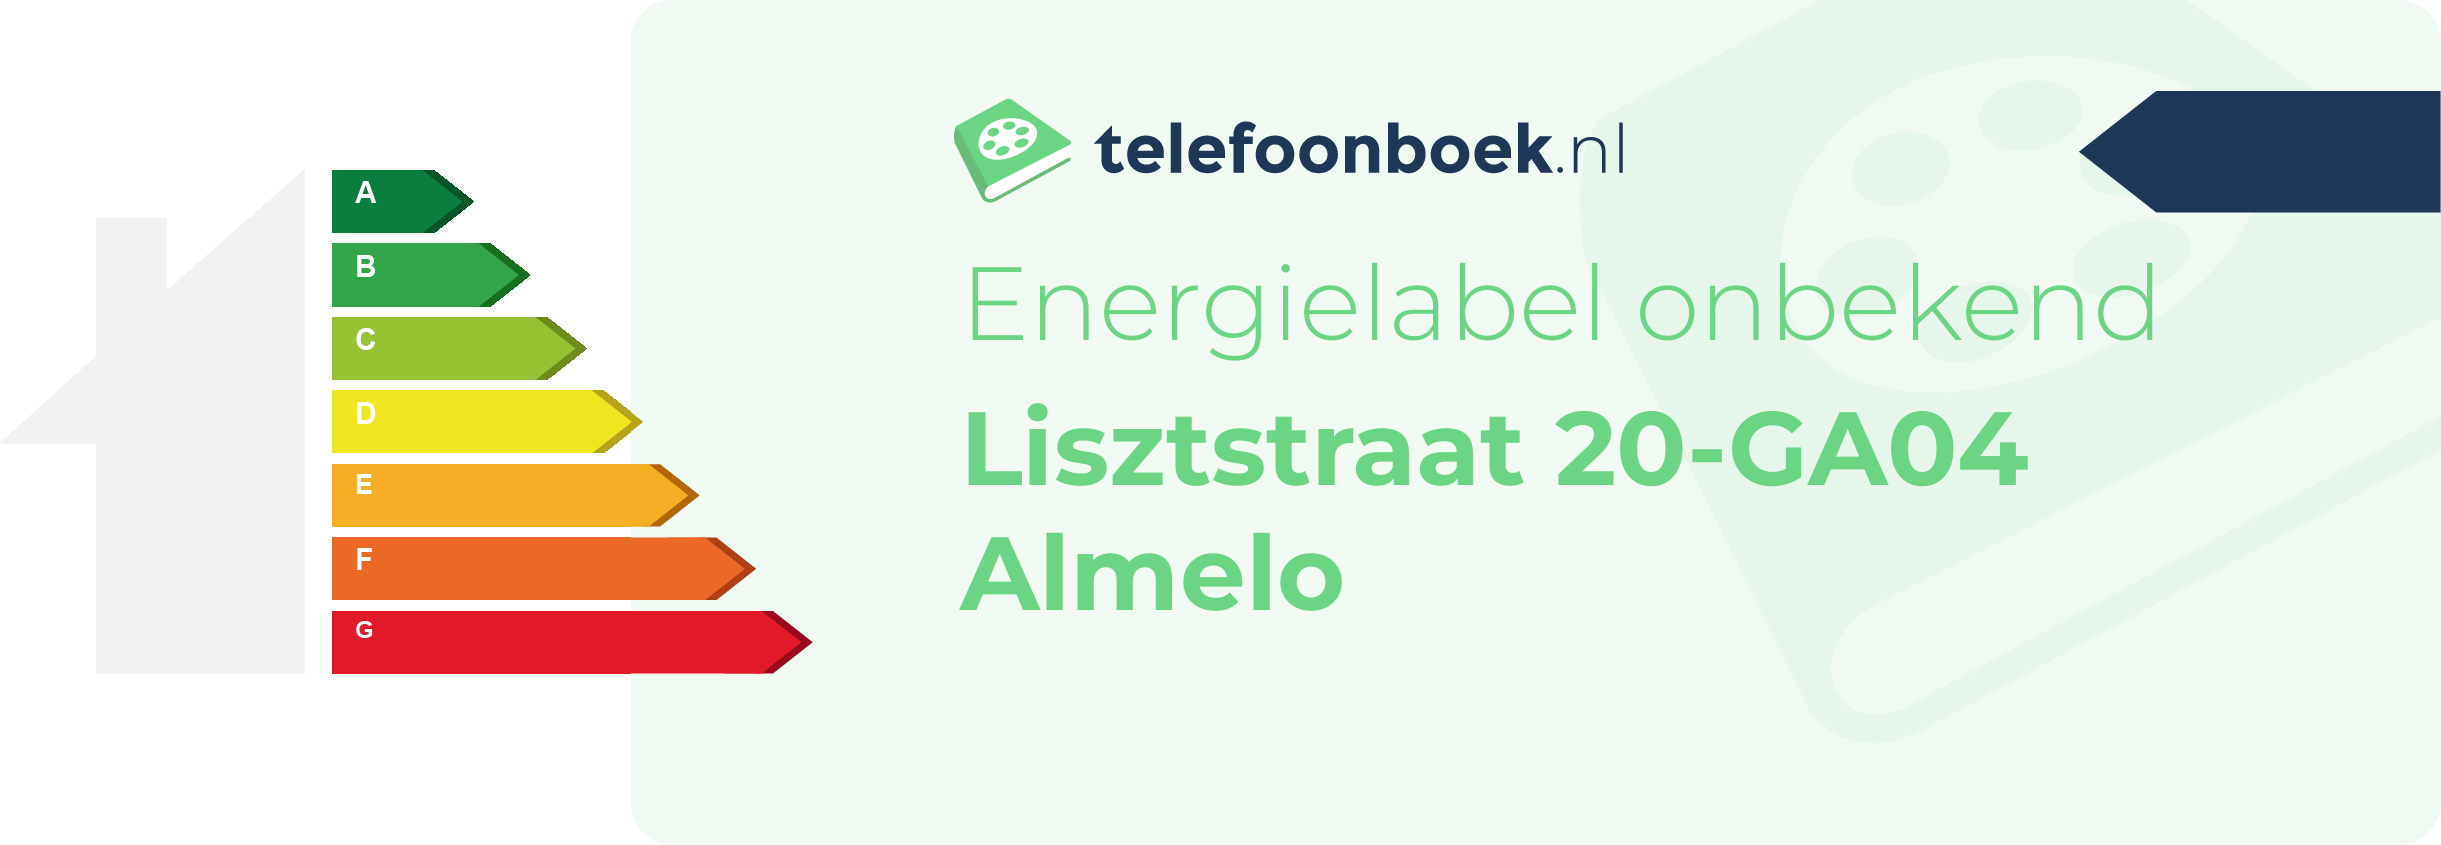 Energielabel Lisztstraat 20-GA04 Almelo